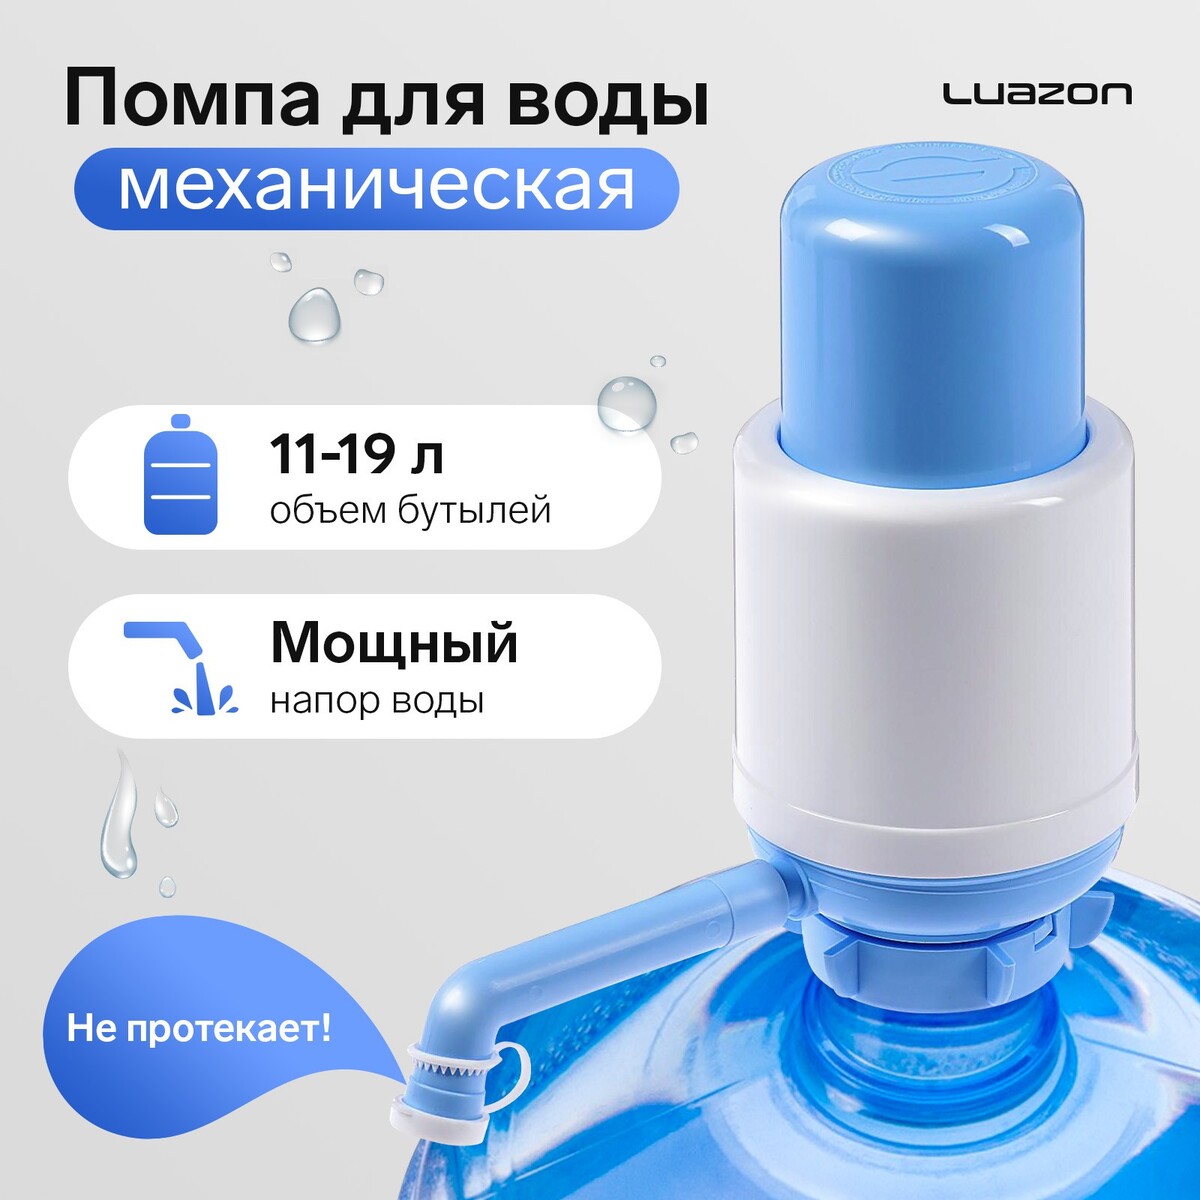 Помпа для воды luazon norma, механическая, большая, под бутыль от 11 до 19 л, голубая помпа для воды luazon norma механическая большая под бутыль от 11 до 19 л голубая